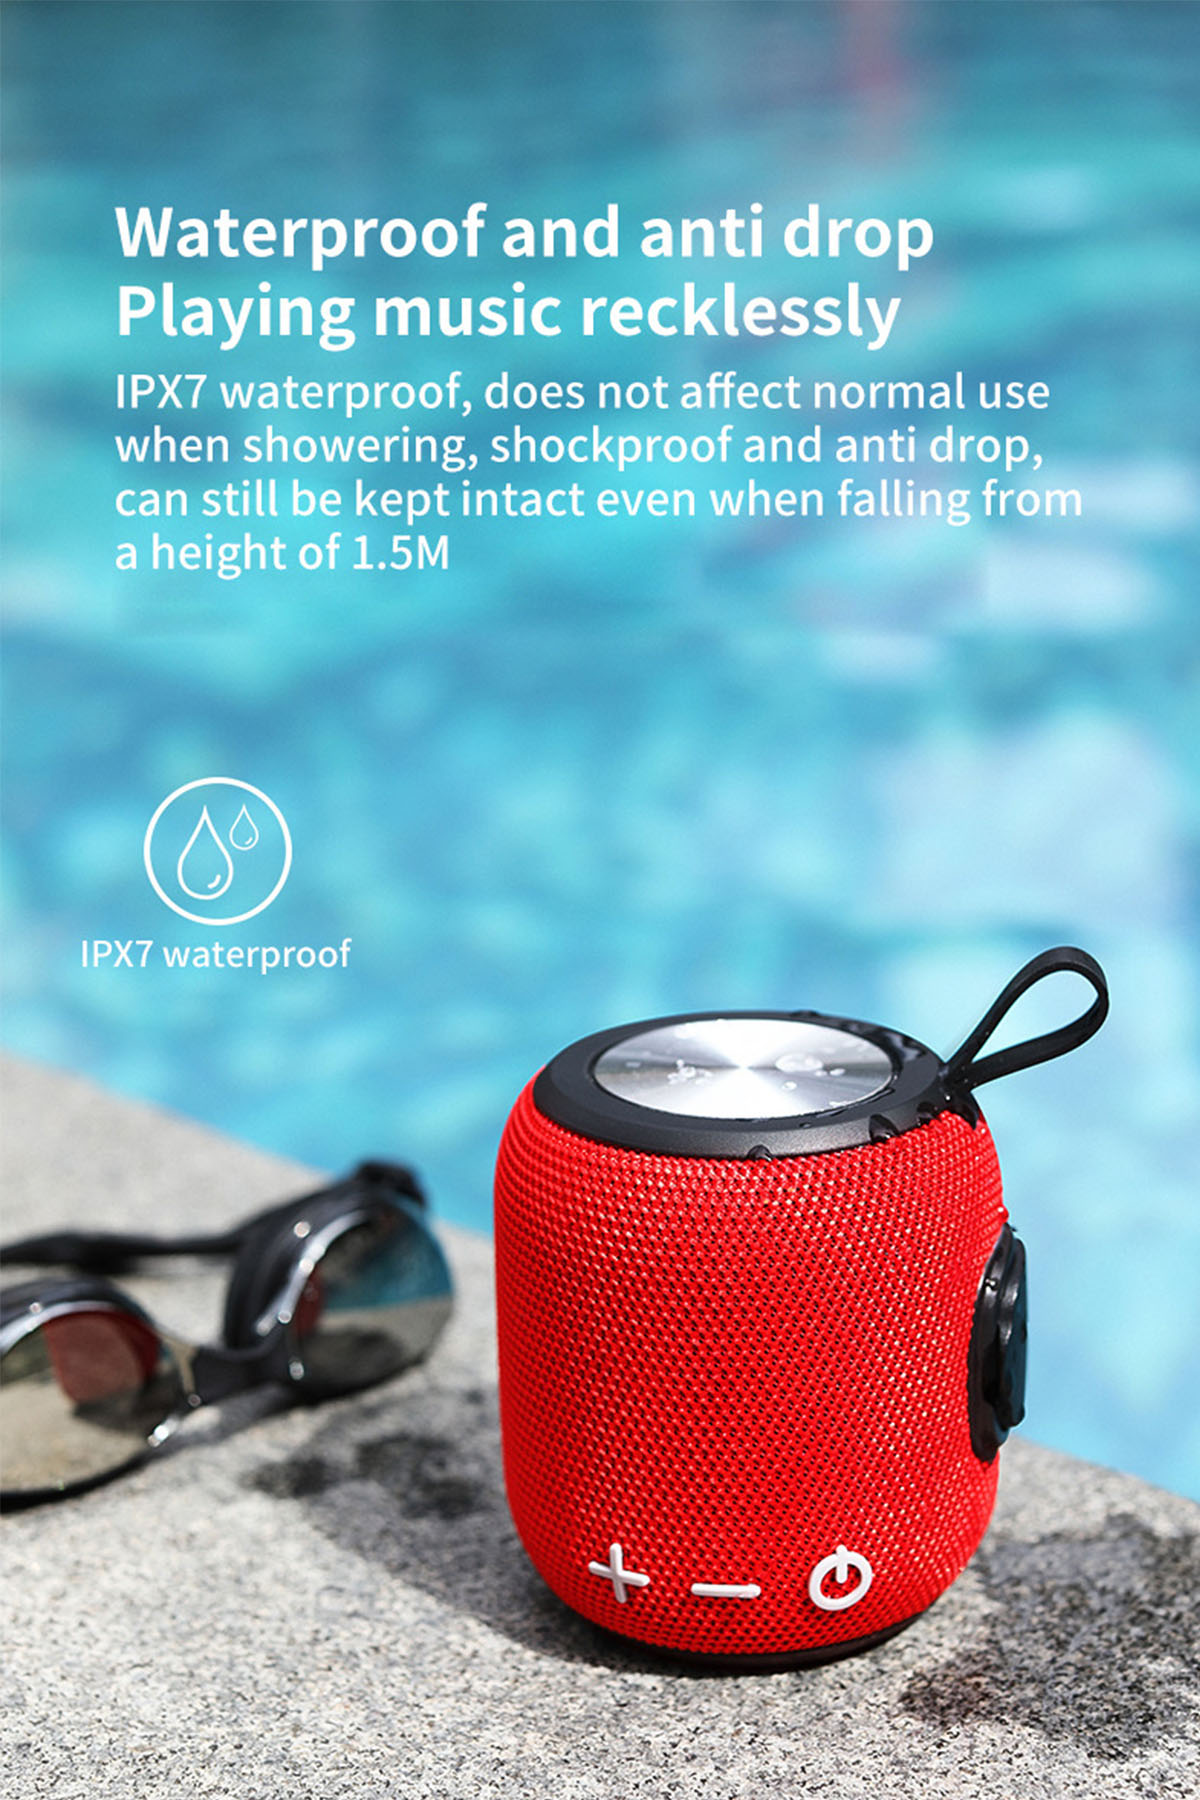 BRIGHTAKE SoundWave: HIFI Bluetooth-Lautsprecher, Sound, Blau-grün Outdoor-Tauglich, Langzeitbatterie